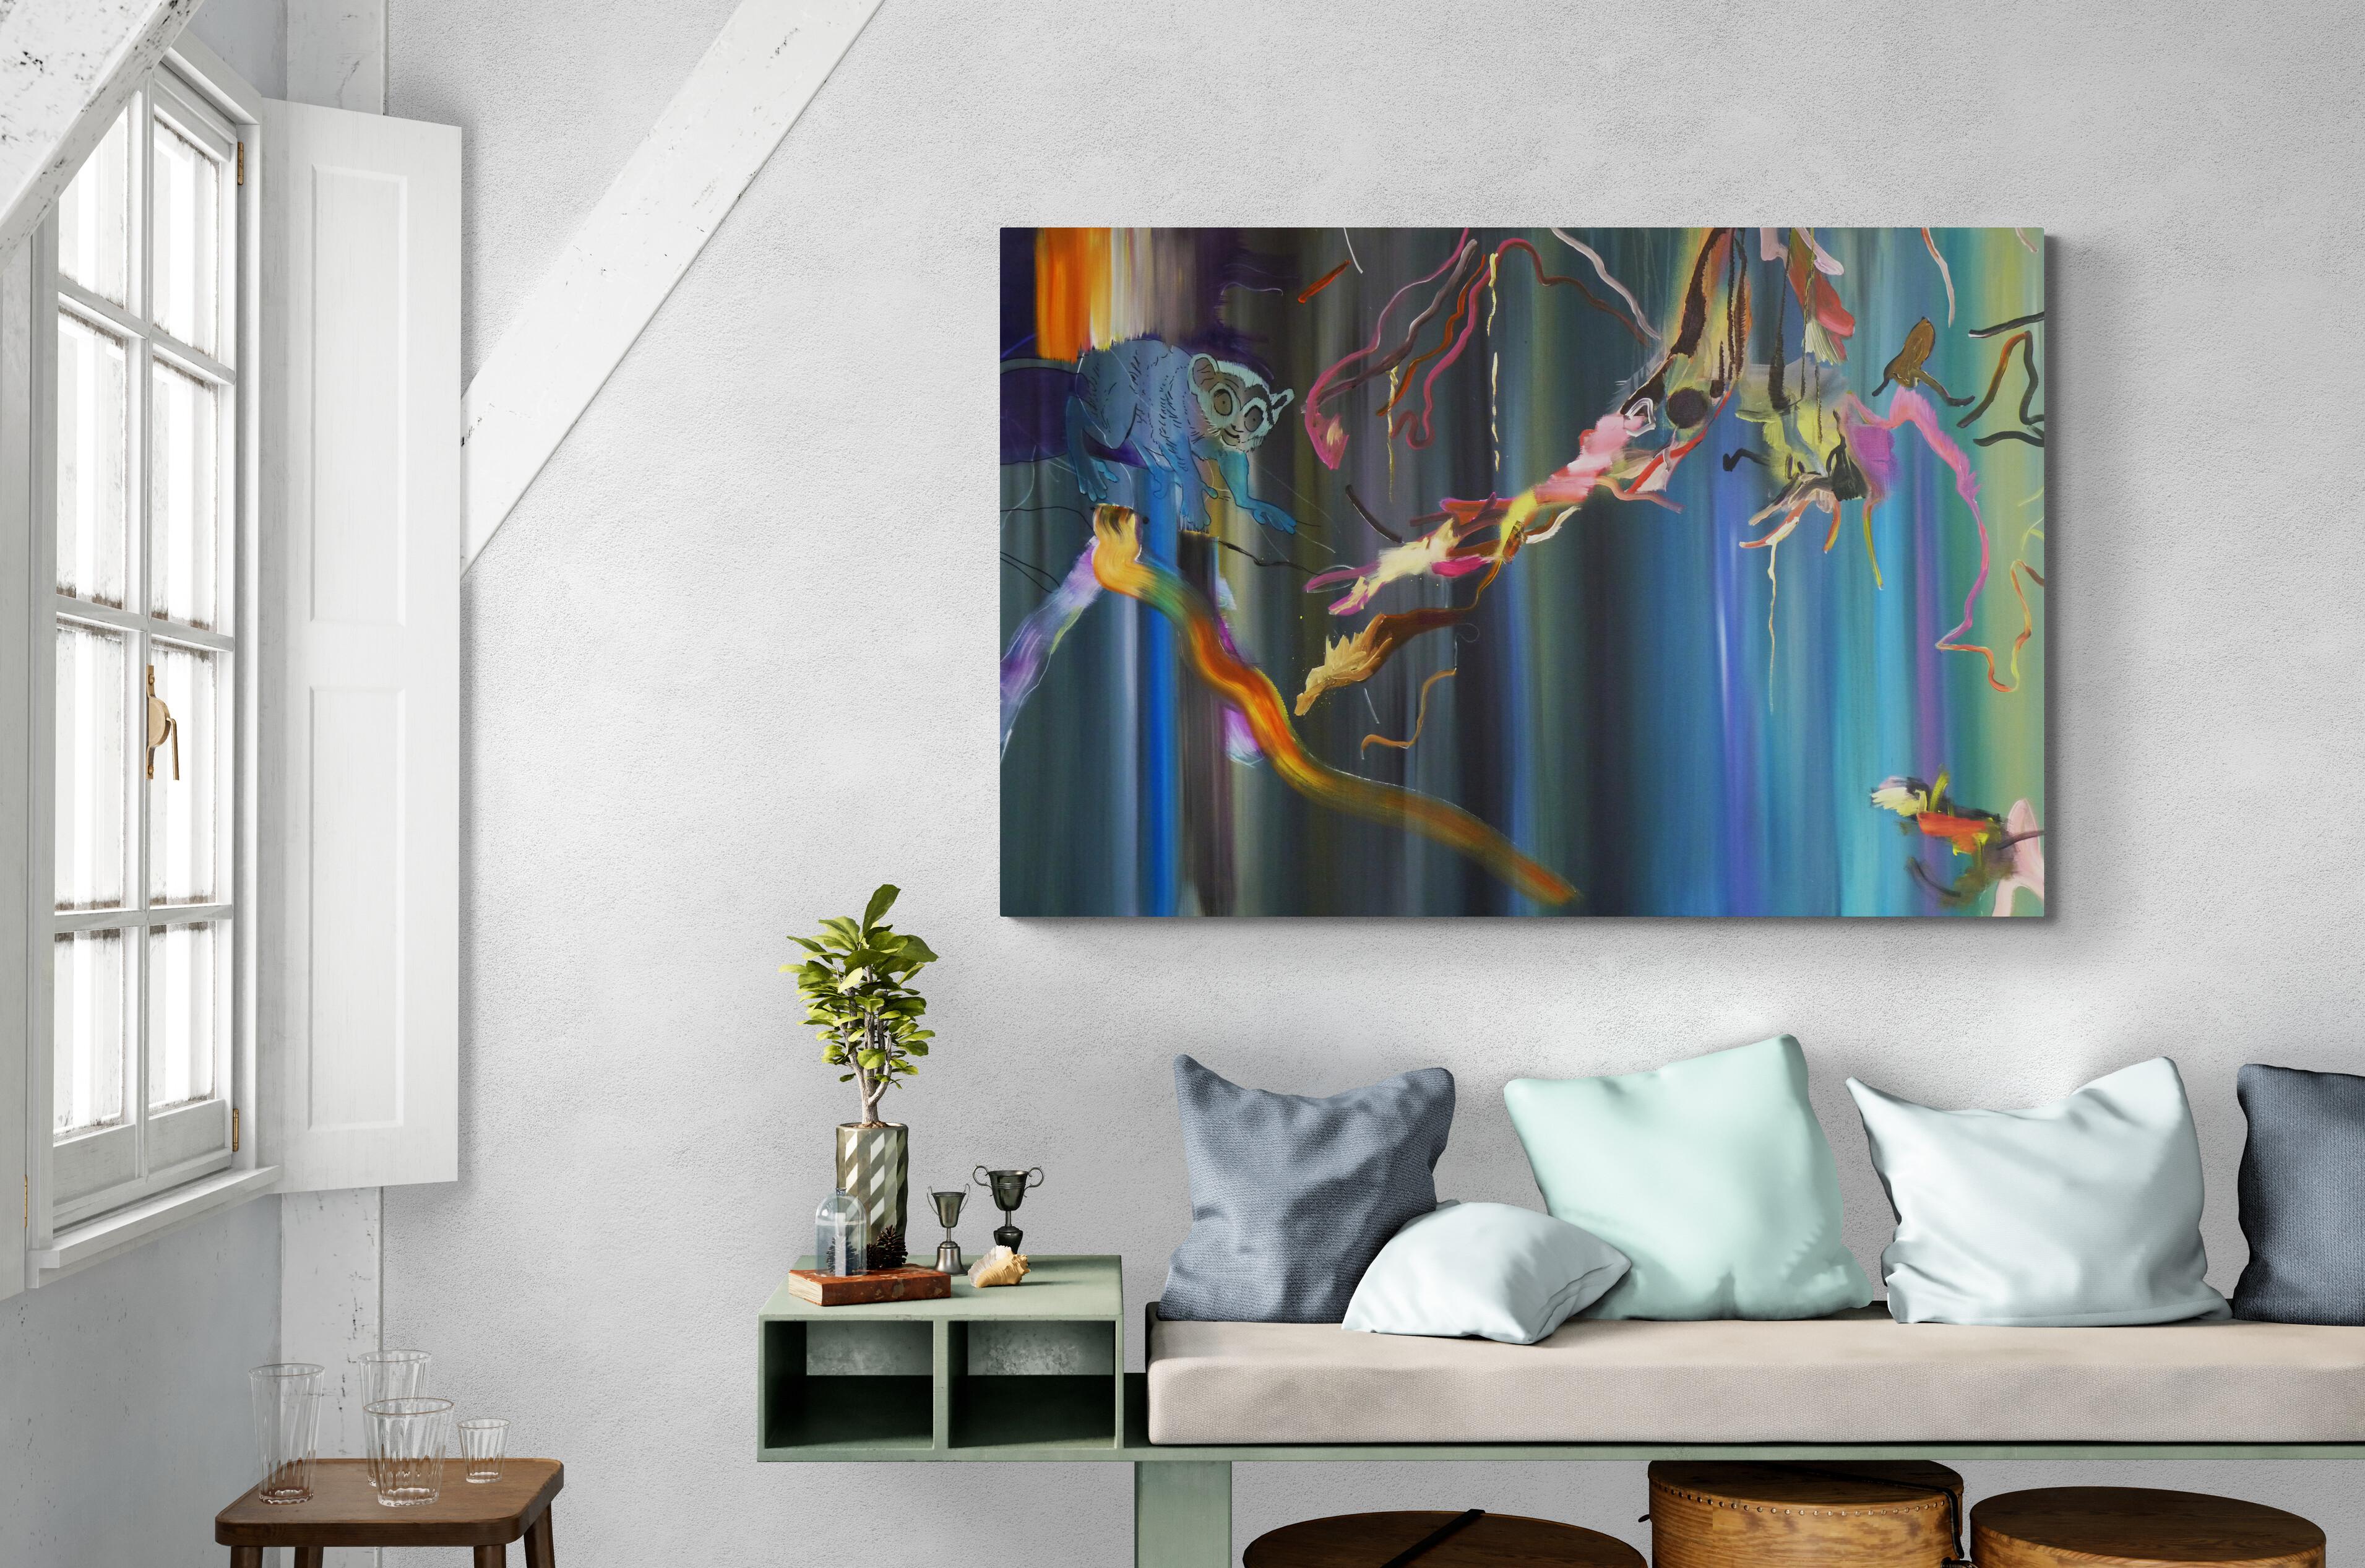 Wo habe ich es gelassen? –  Lemur, Dschungel, Modernes Landschaftsgemälde, farbenfroh, blau (Zeitgenössisch), Painting, von Justyna Pennards-Sycz